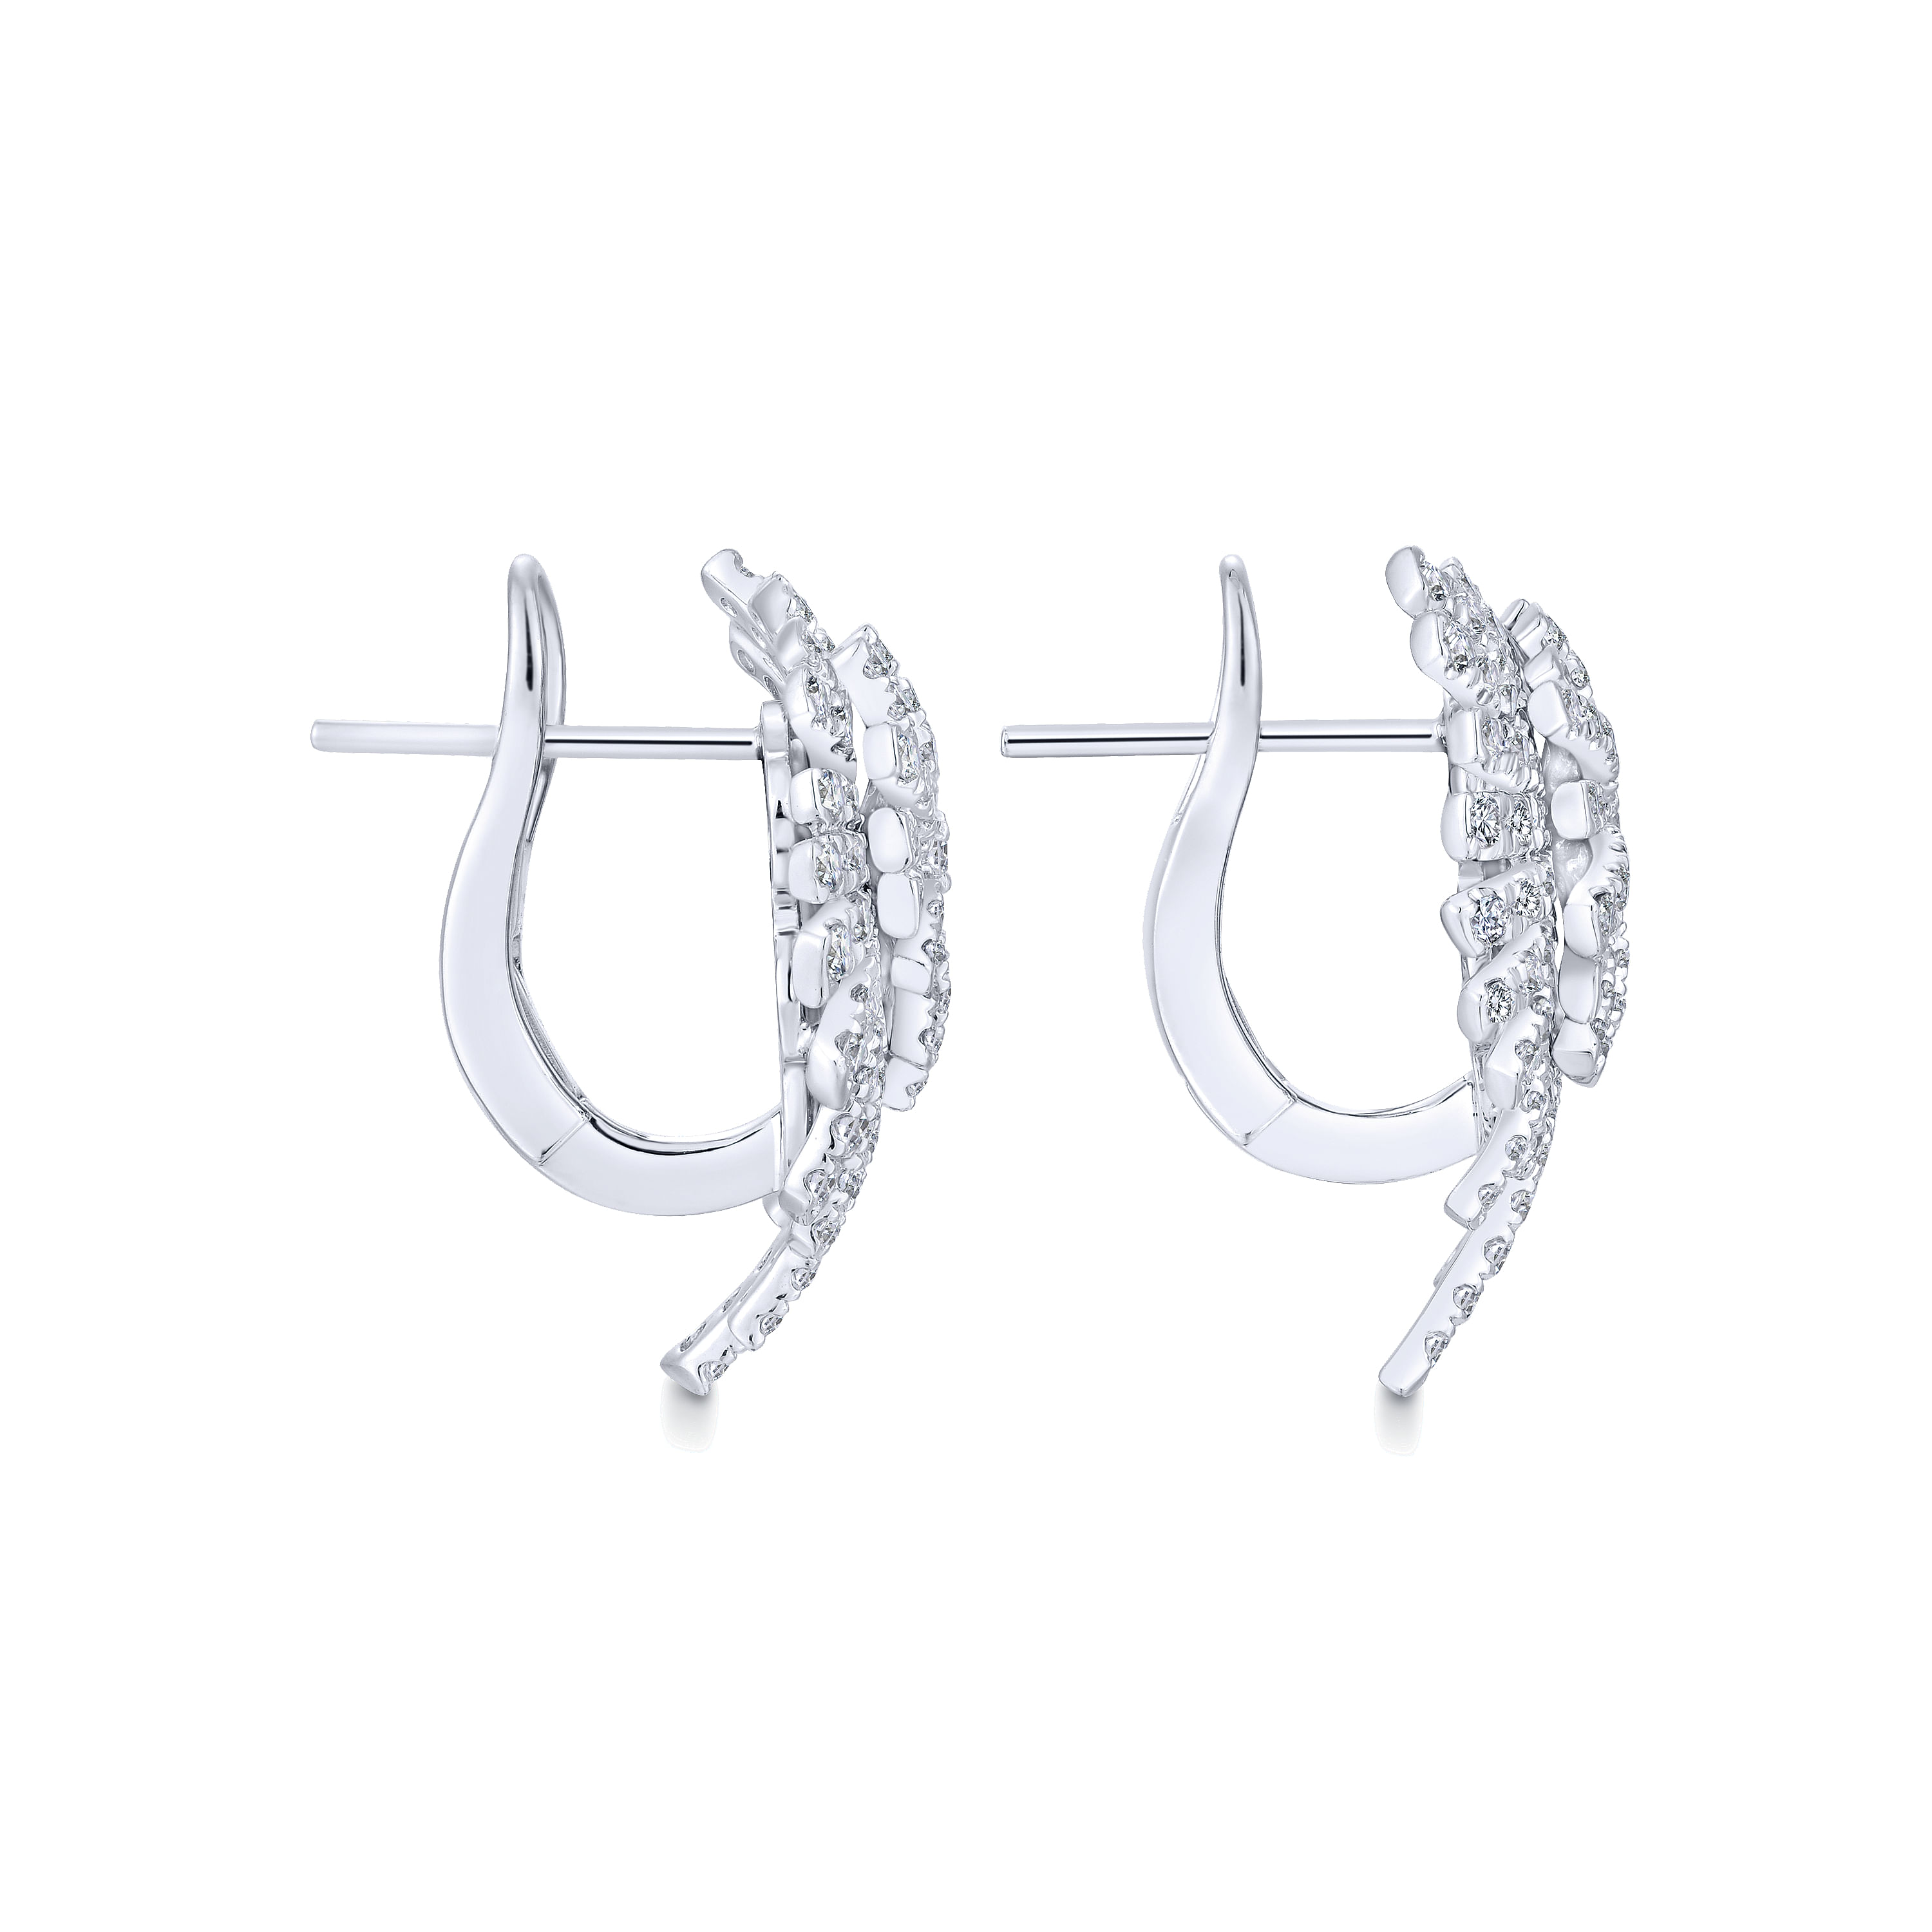 18K White Gold Diamond Cluster Statement Earrings